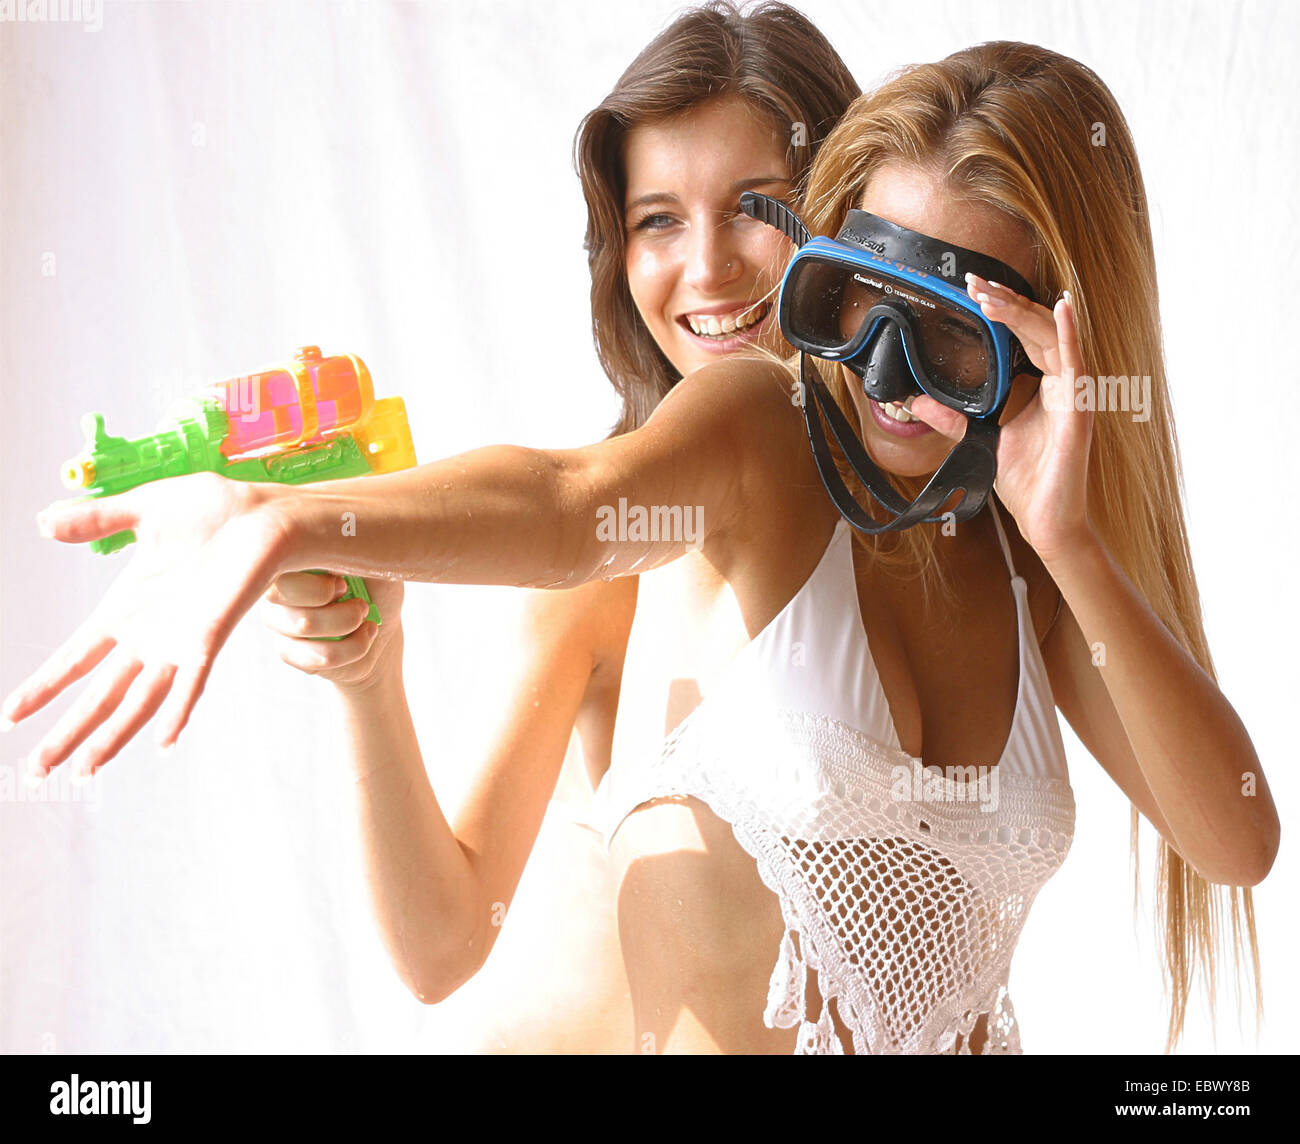 zwei schöne junge Frauen tragen Bikinis herumalbern mit Awater Pistole und Tauchen Brillen Stockfoto